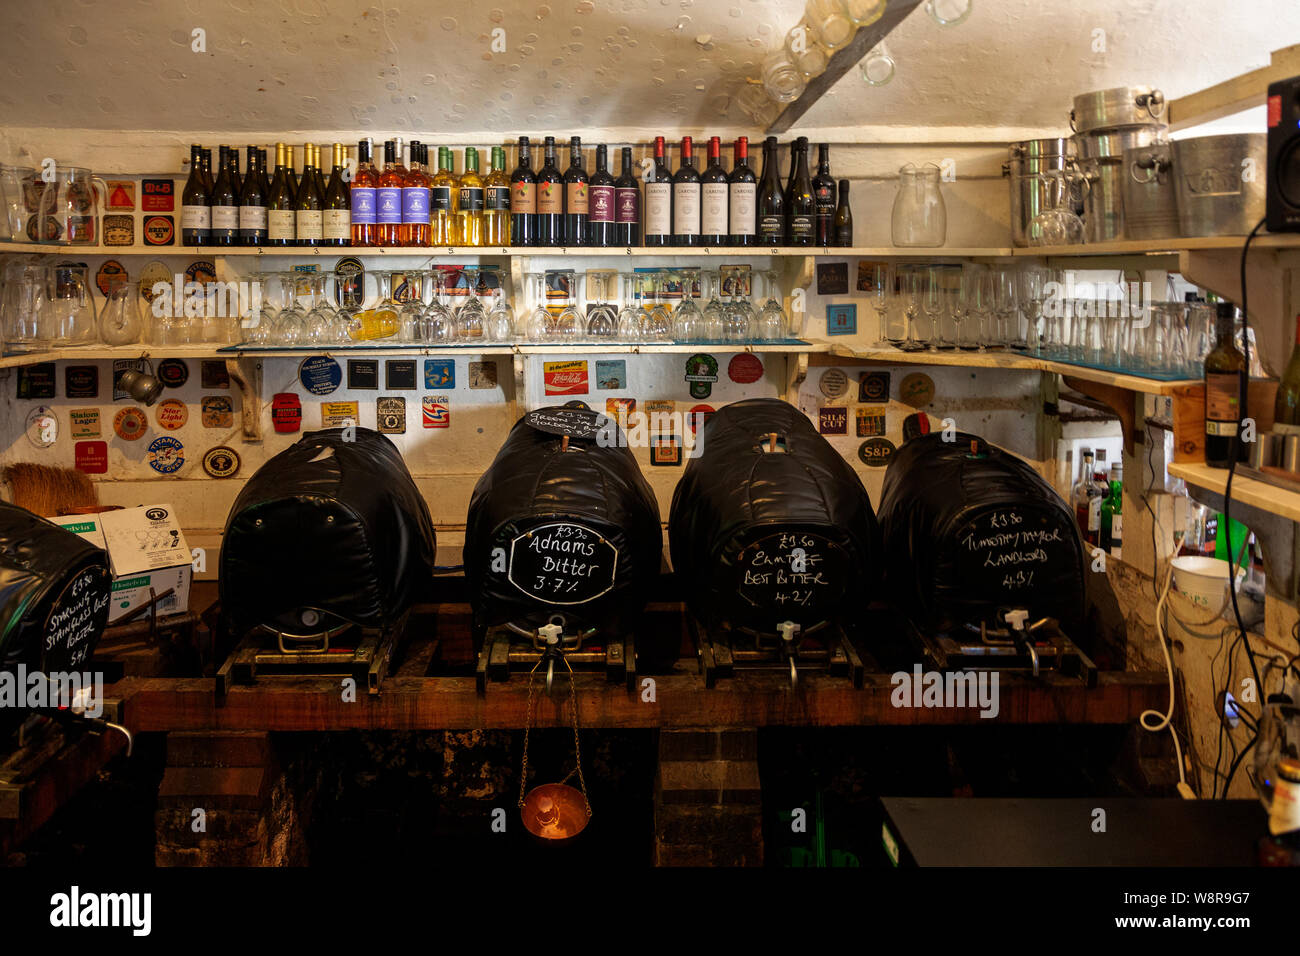 Barils de vraie bière bière au tap room of the King's Head Pub connue comme la chambre basse, The Laxfield, Suffolk, Angleterre, RU Banque D'Images